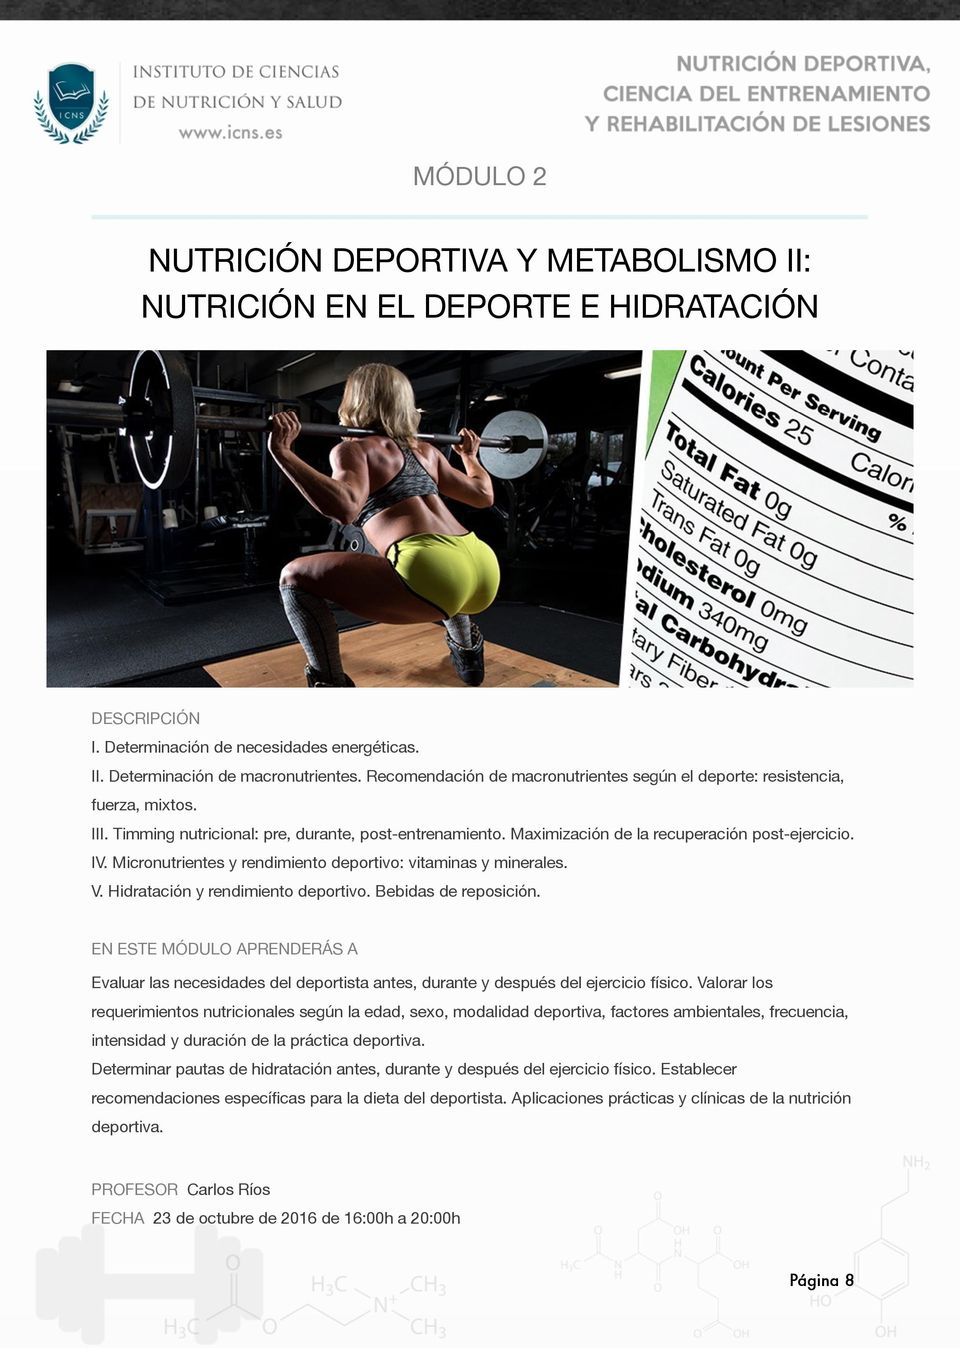 Micronutrientes y rendimiento deportivo: vitaminas y minerales. V. Hidratación y rendimiento deportivo. Bebidas de reposición.